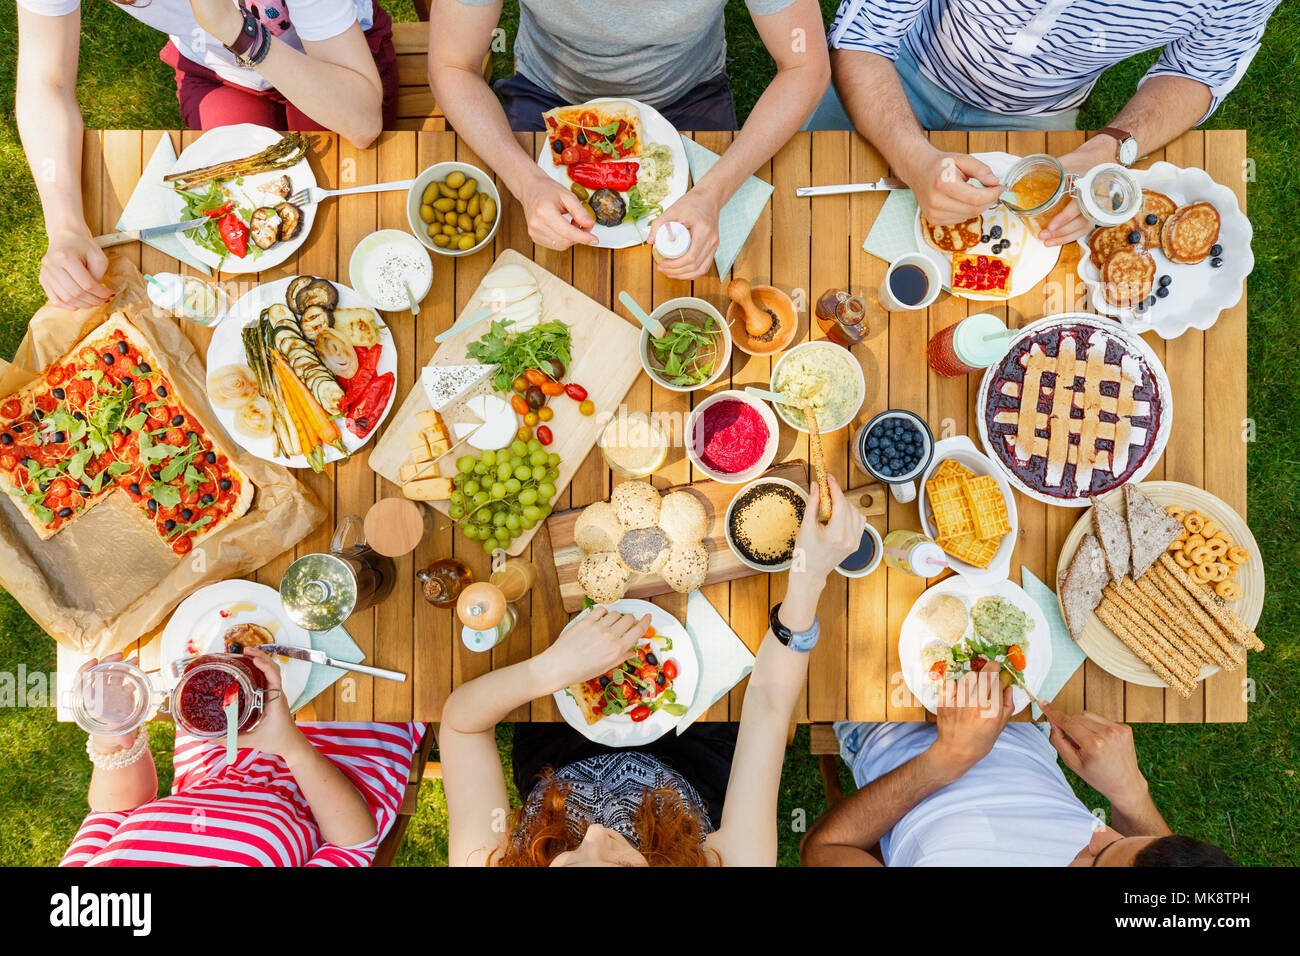 Amigos comiendo alimentos saludables como vegan pizza y fruta al aire libre en el parque en una tabla rústica Foto de stock